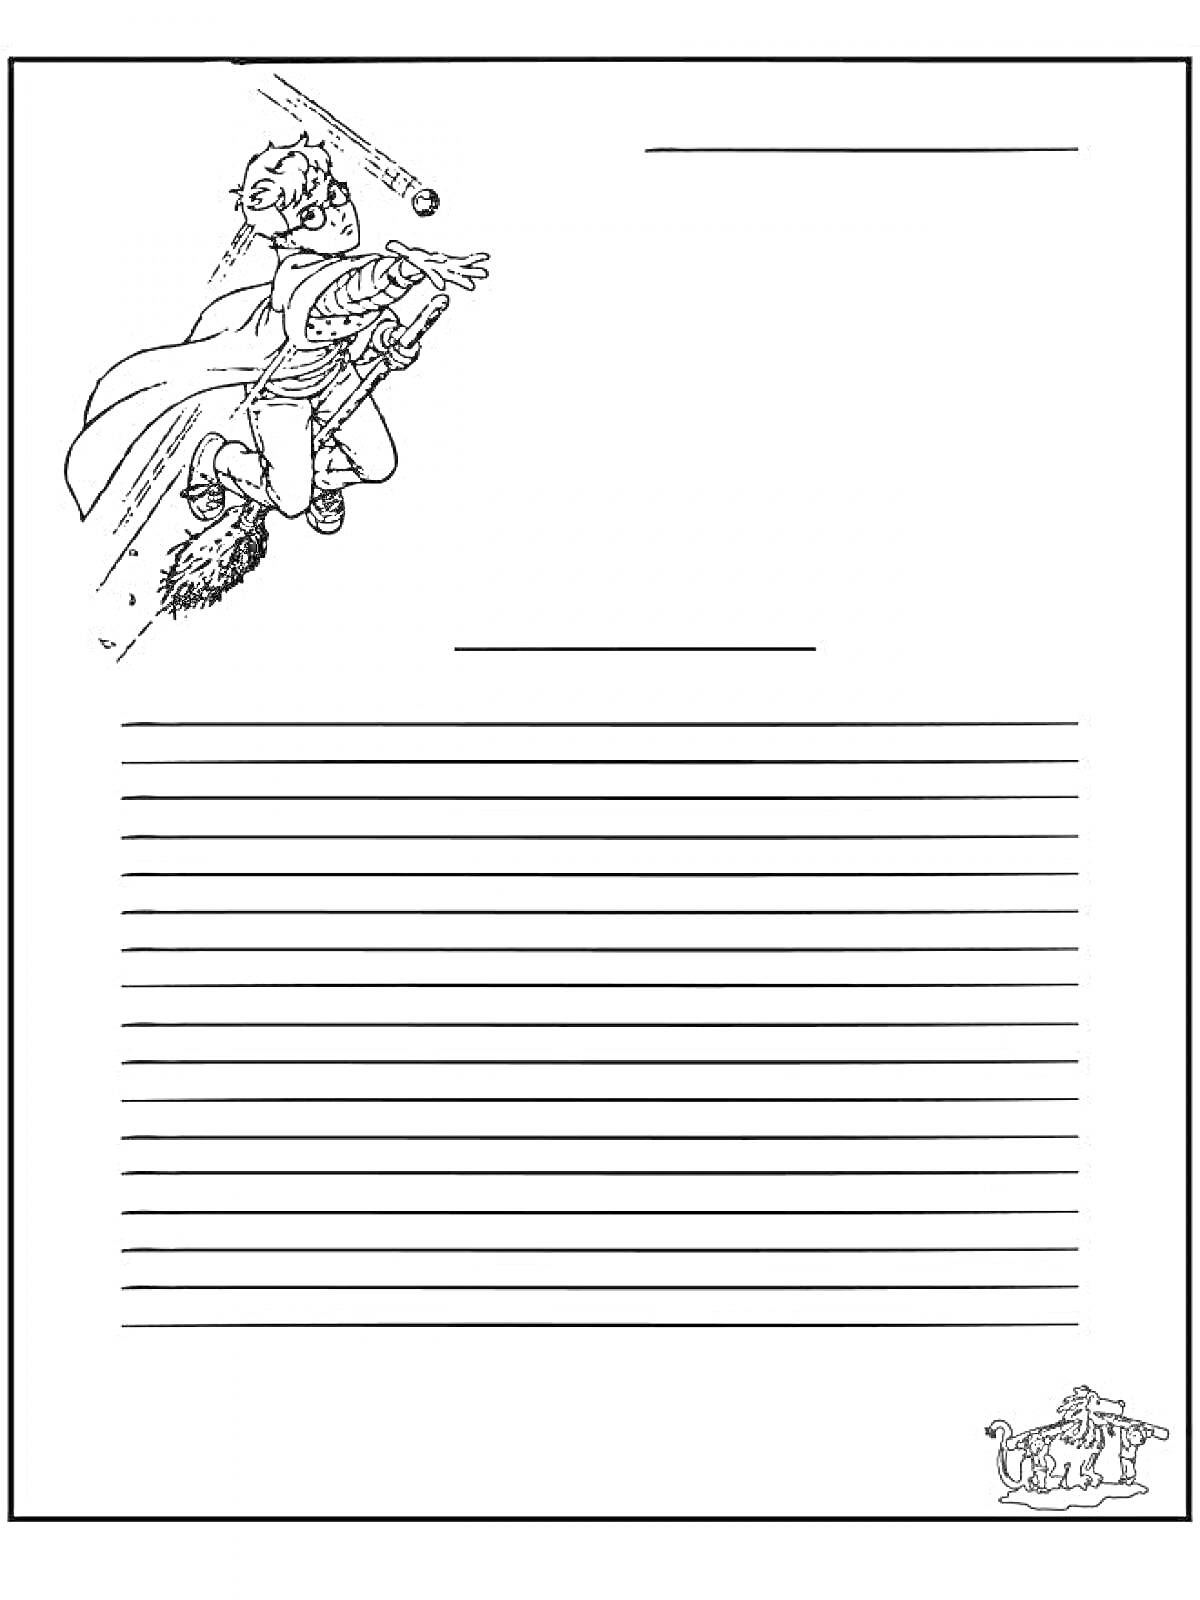 Раскраска Лист для письма солдату с изображением летящего мальчика на метле и мяча, а также винтажной печатной машинки